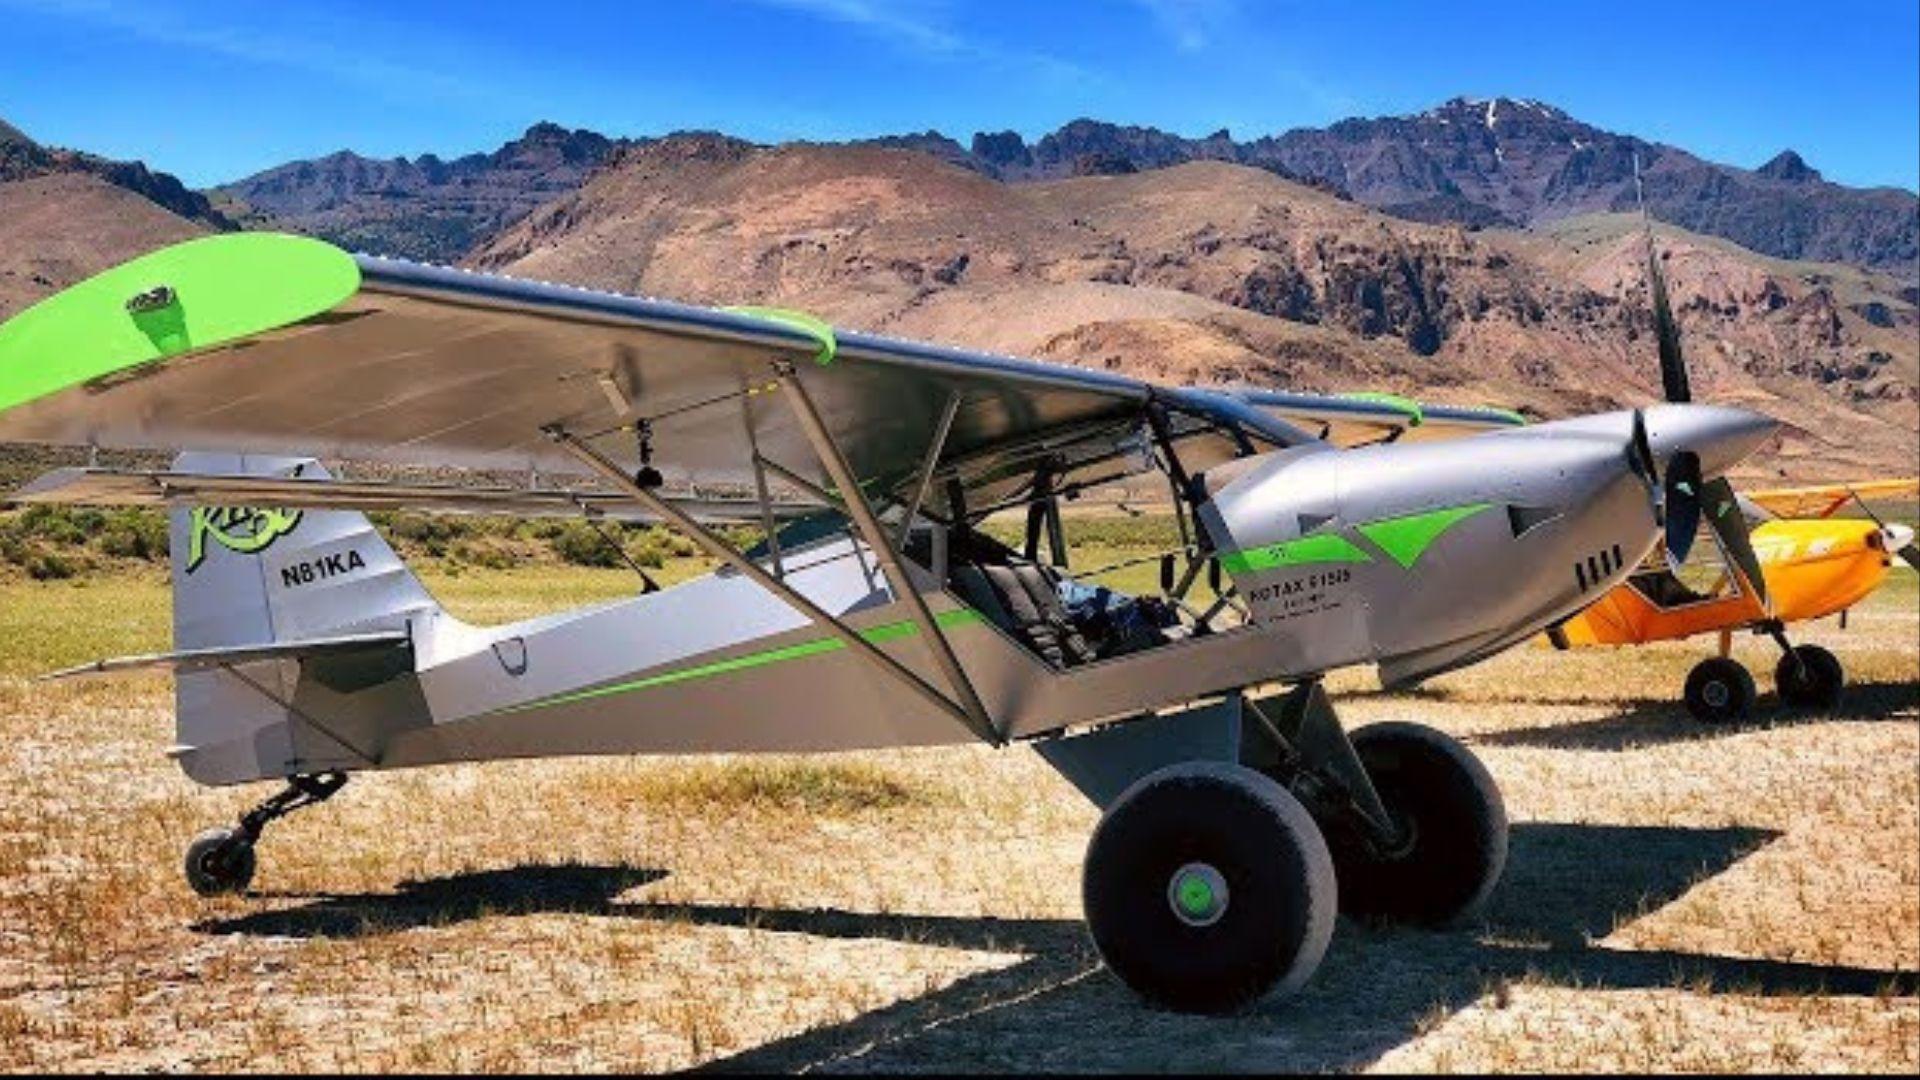 Silver and green Kitfox aircraft